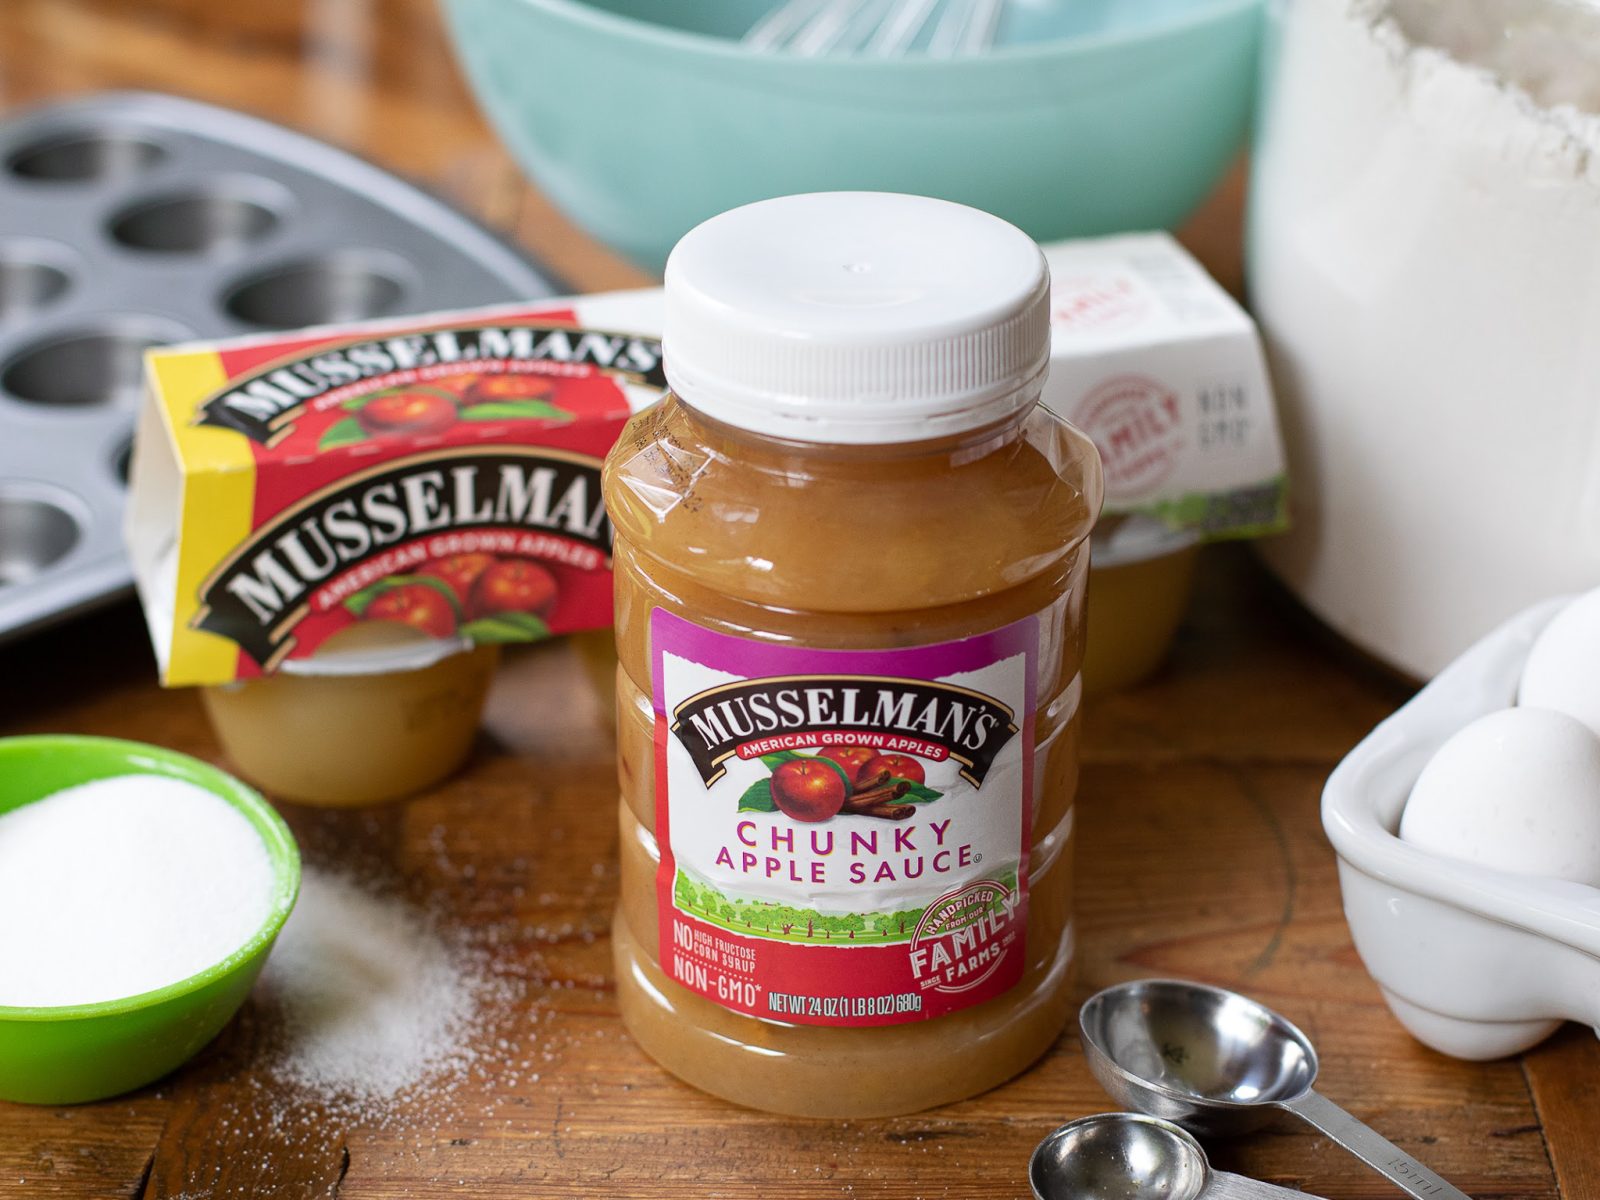 New Musselman’s Apple Sauce Coupon For The Publix Sale – Just $1.50 At Publix